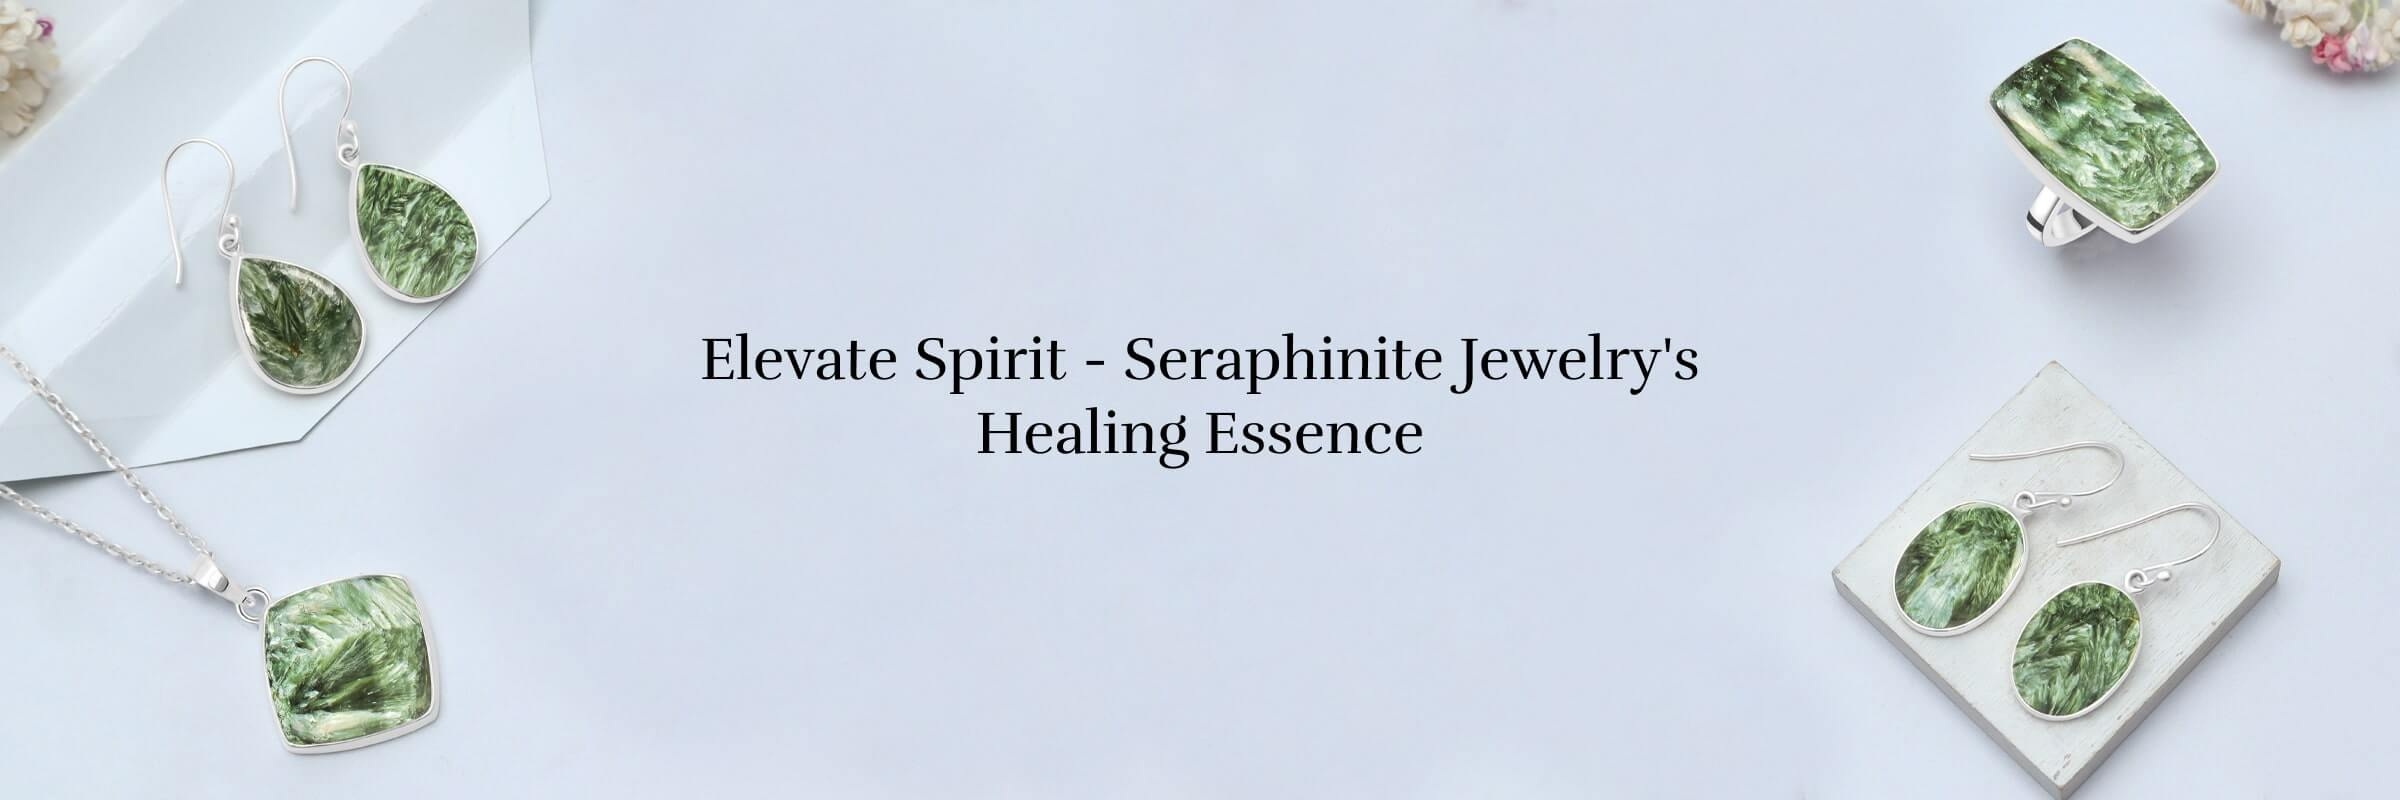 Seraphinite Jewelry Spiritual Healing Properties